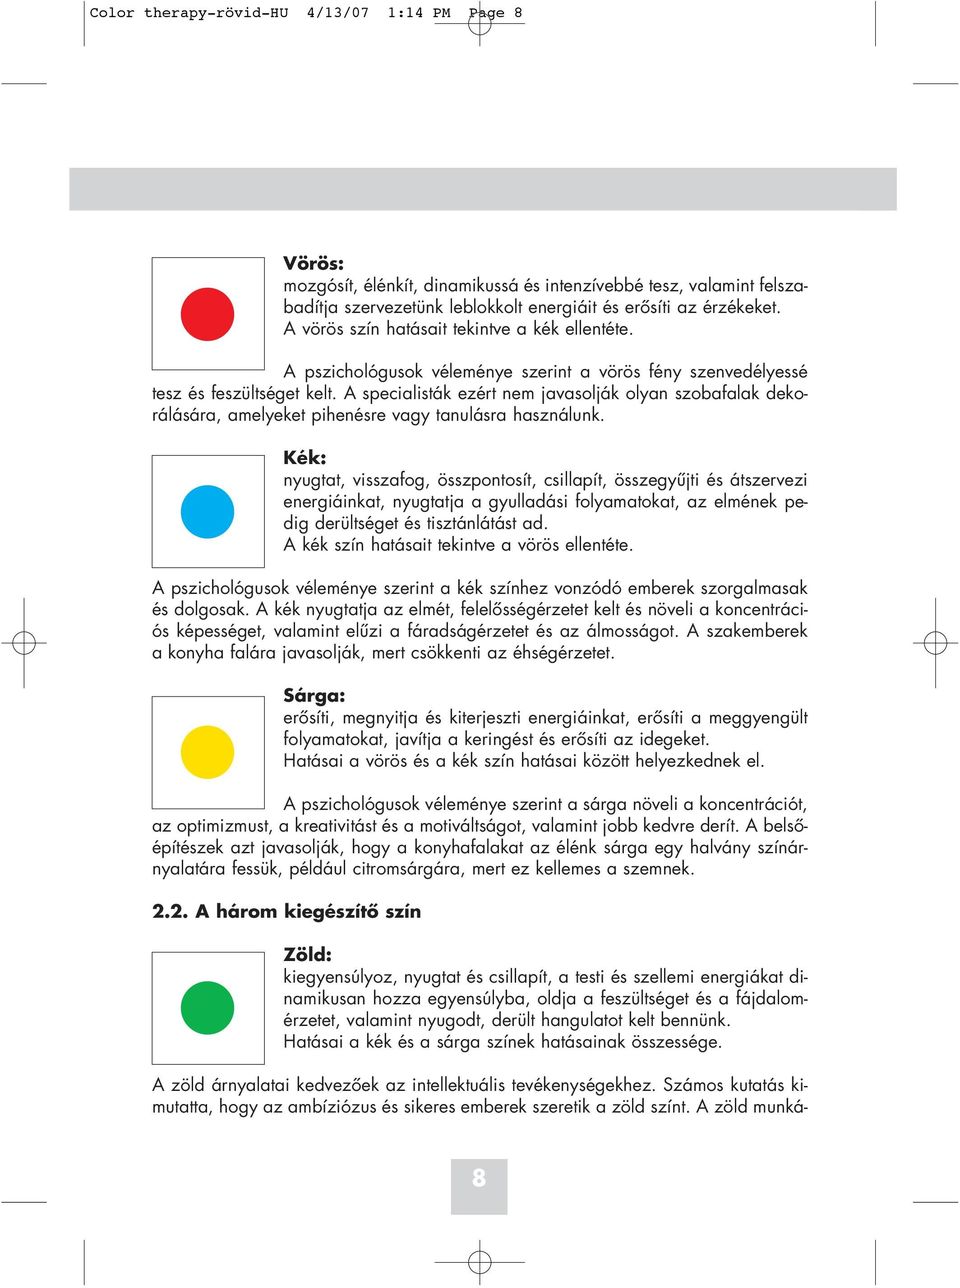 Color therapy-rövid-hu 4/13/07 1:14 PM Page I. Útmutató a BIOPTRON PRO 1  Színterápiához - PDF Free Download